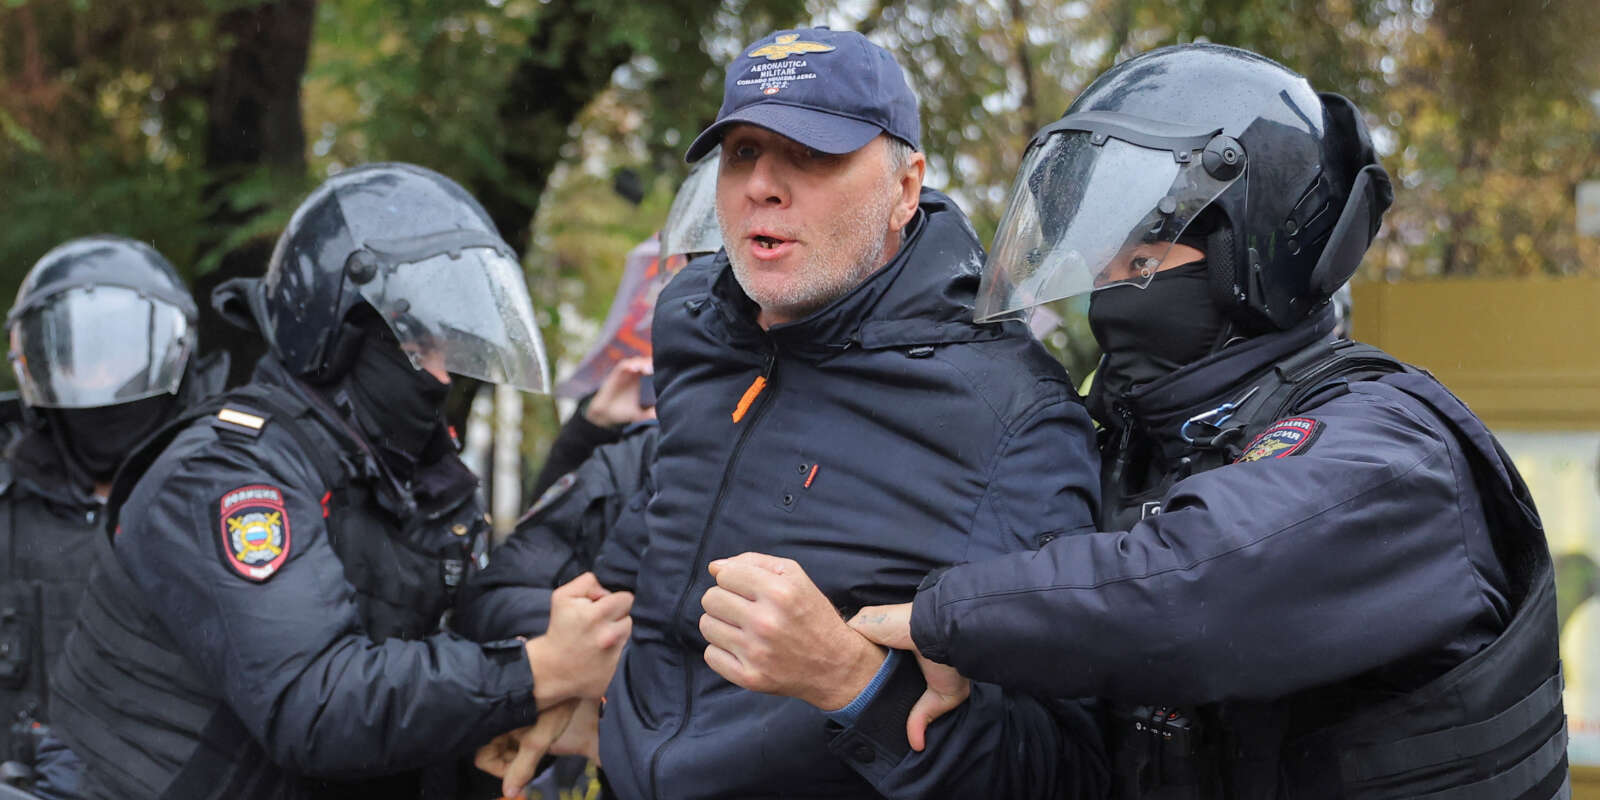 Des agents des forces de l’ordre russes détiennent une personne pendant un rassemblement, après que des militants de l’opposition ont appelé à des manifestations de rue contre la mobilisation des réservistes ordonnée par le président Vladimir Poutine, à Moscou, le 24 septembre 2022.